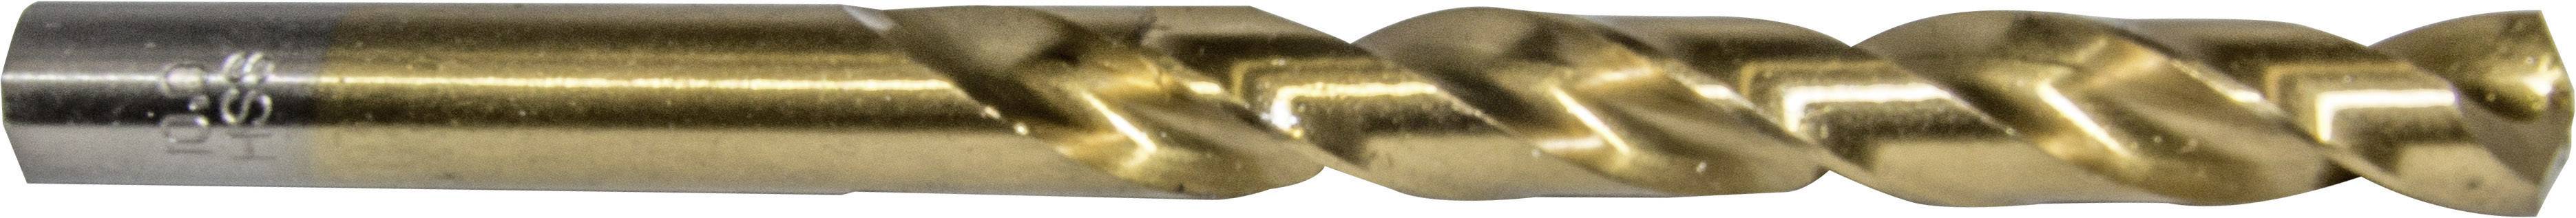 HELLER 29280 1 Metall-Spiralbohrer 1 Stück 13 mm Gesamtlänge 151 mm 1 St.